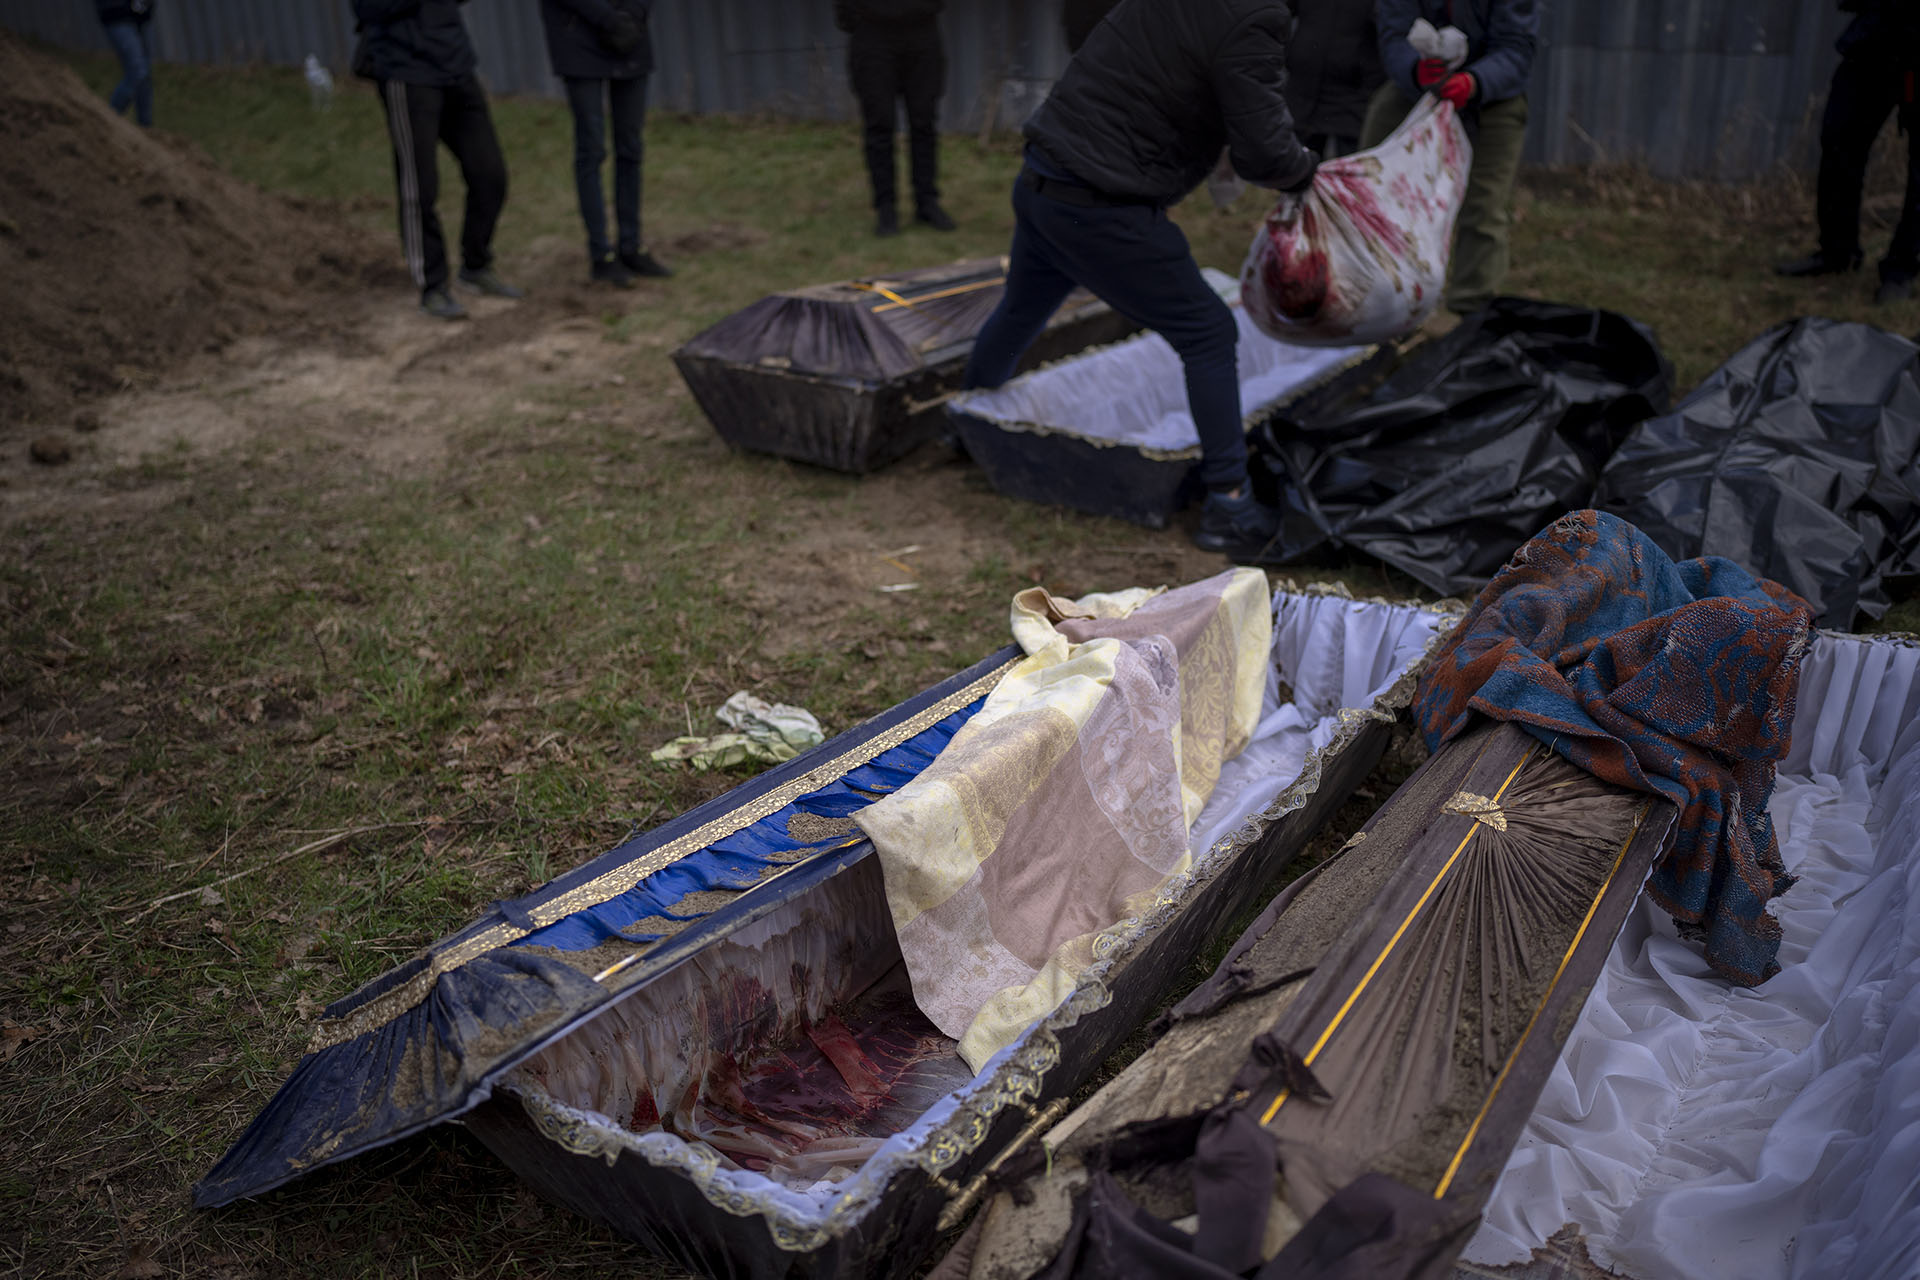 Voluntarios pusieron en una bolsa el cuerpo de un civil asesinado por el ejército ruso, después de haber sido sacado de una fosa común, durante una exhumación en Mykulychi, Ucrania. (AP Foto/Emilio Morenatti) 